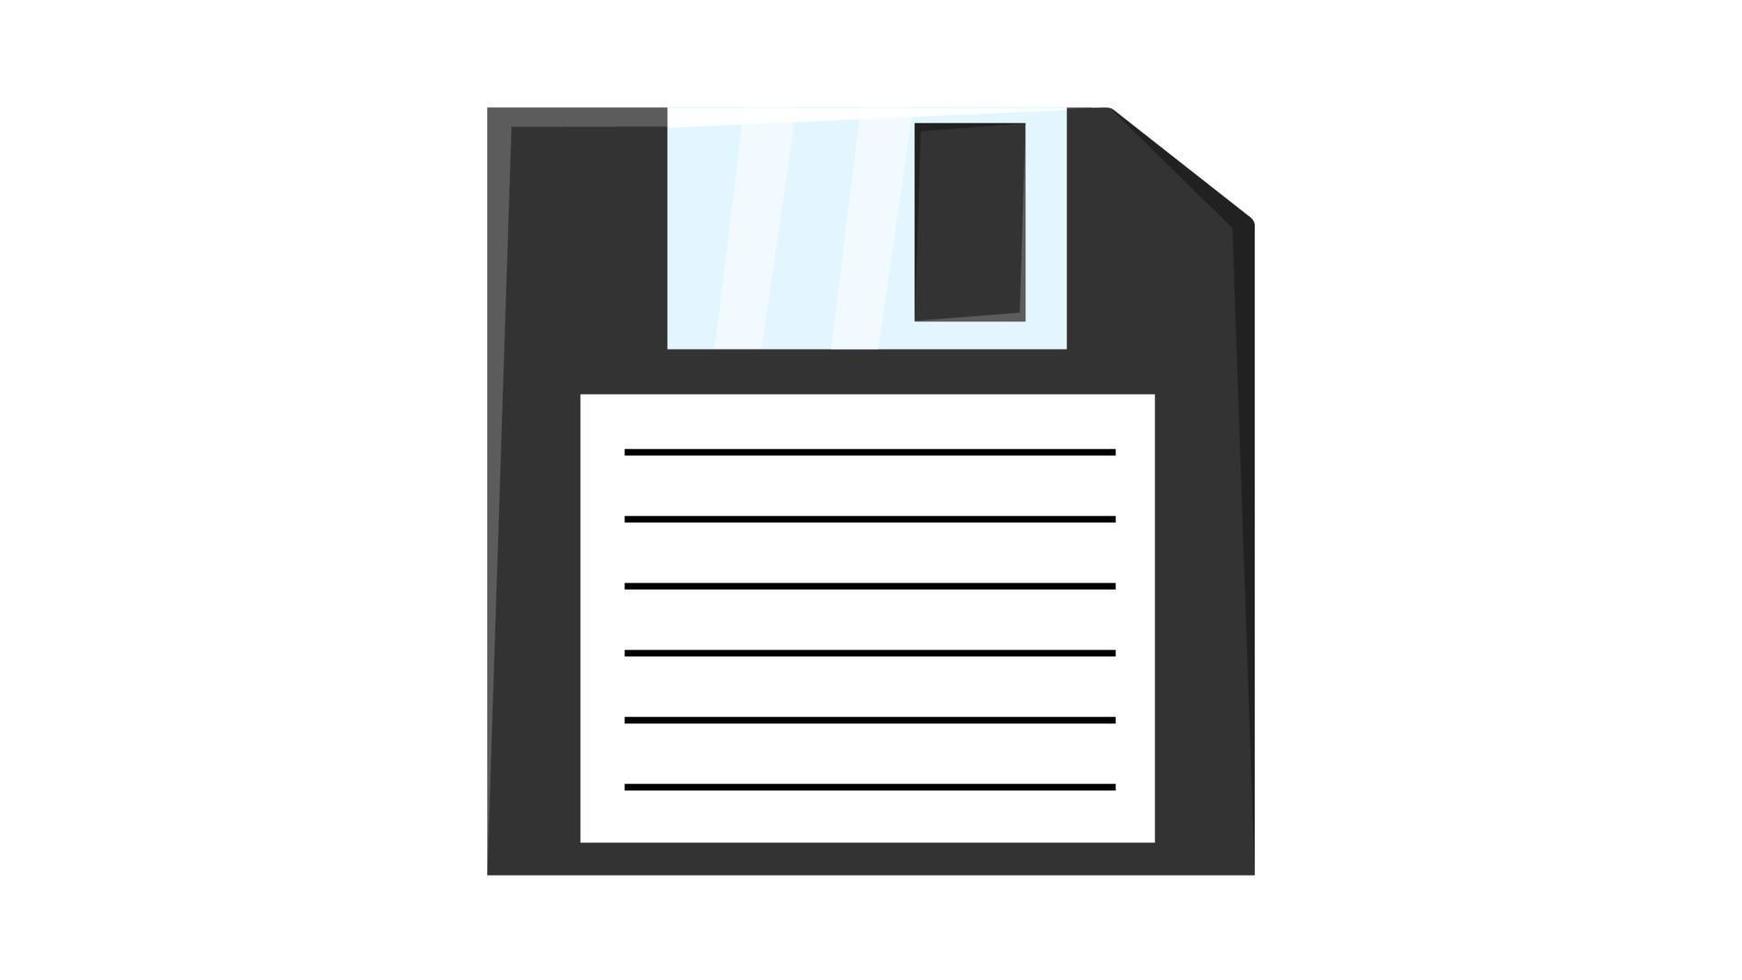 disquete antigo retro vintage hipster para computador para armazenar informações, pc dos anos 70, 80, 90. ícone preto e branco. ilustração vetorial vetor